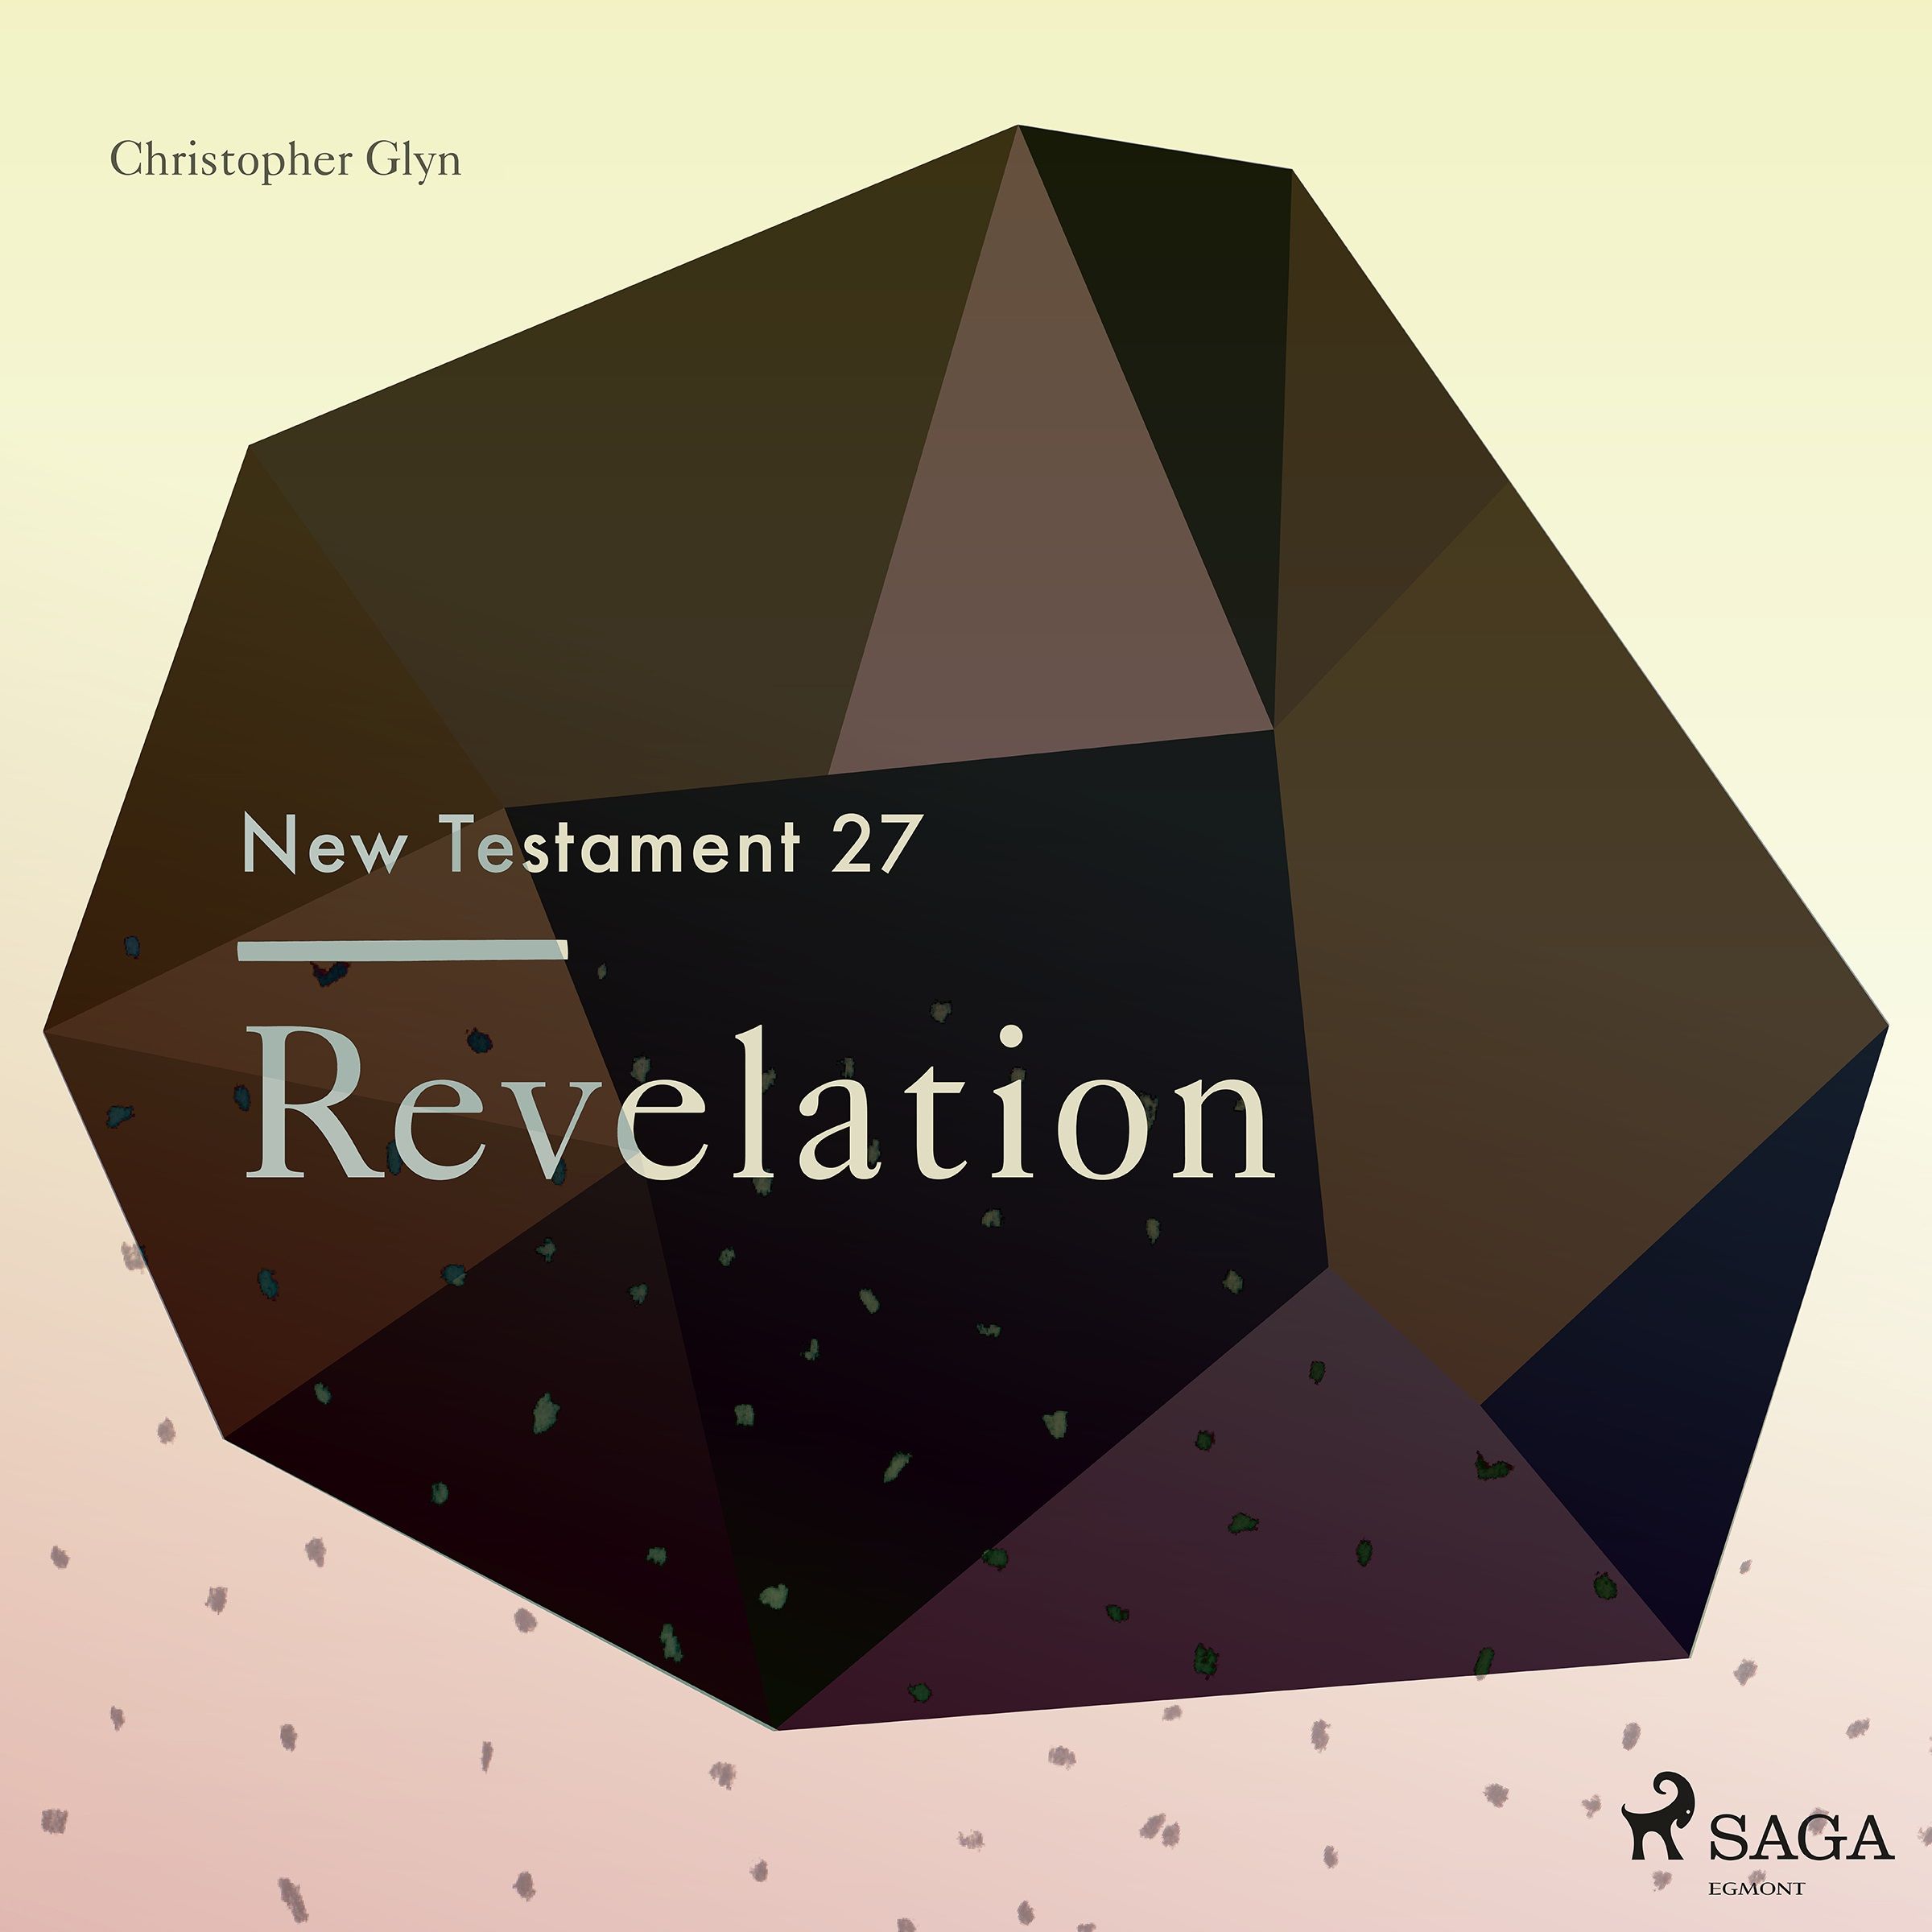 The New Testament 27 - Revelation, lydbog af Christopher Glyn